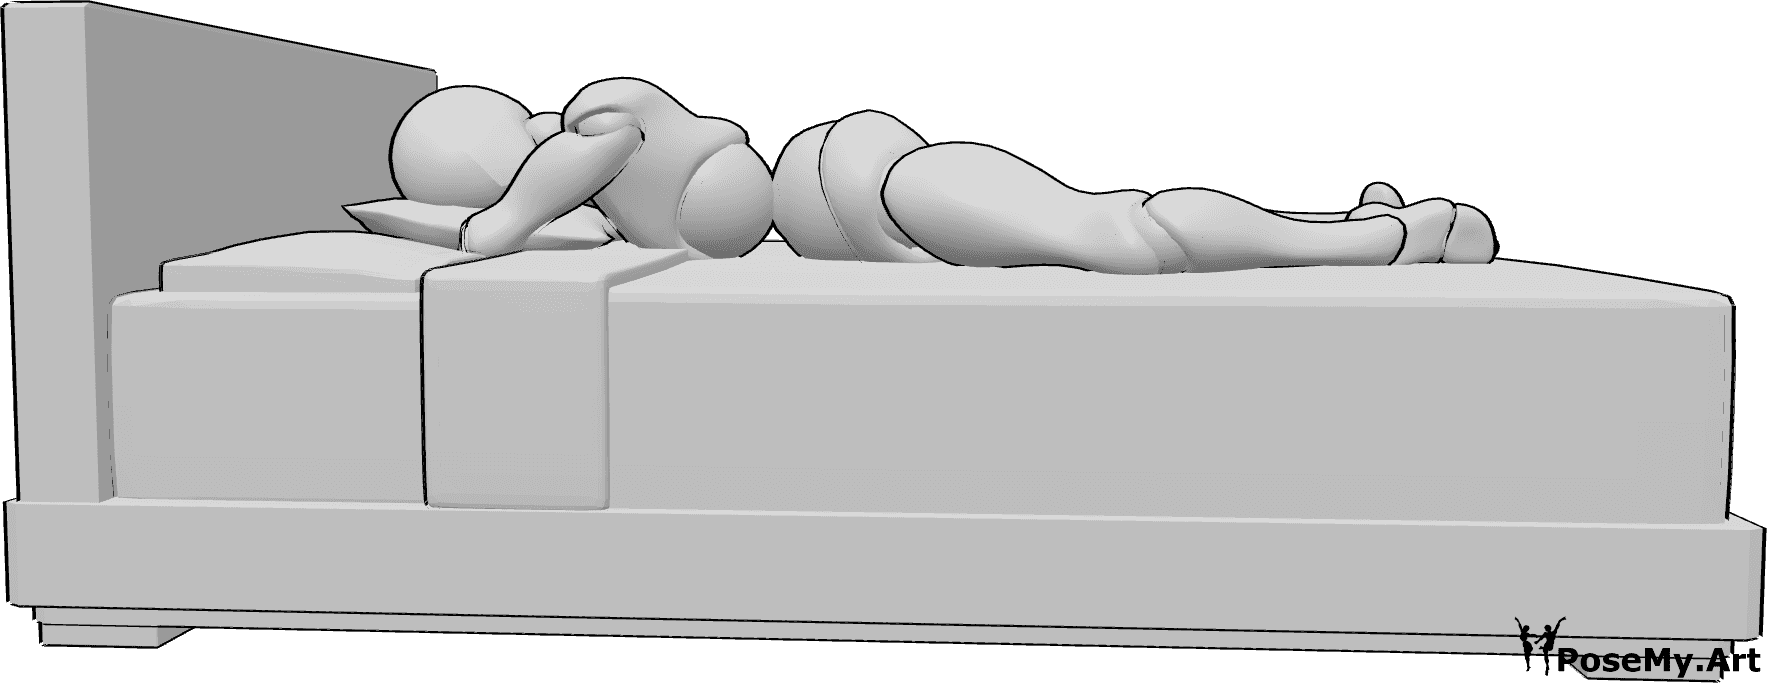 Posen-Referenz- Weibliche liegende Bett-Pose - Die Frau liegt auf dem Bett, auf dem Bauch liegend, den Kopf auf ein Kissen gestützt